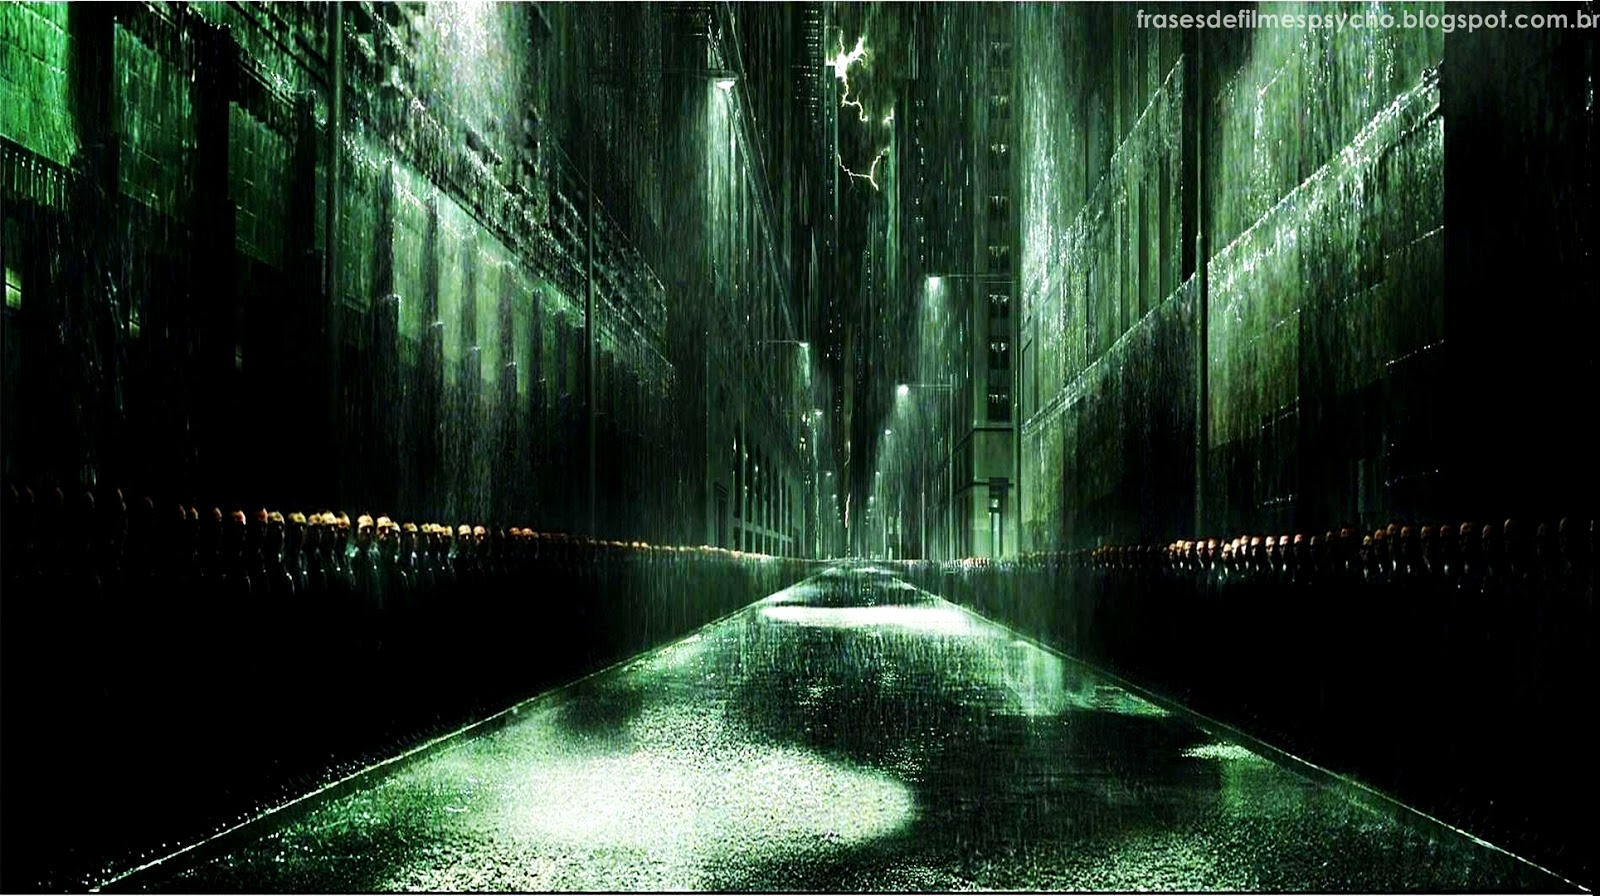 The Matrix Revolutions Wallpaper